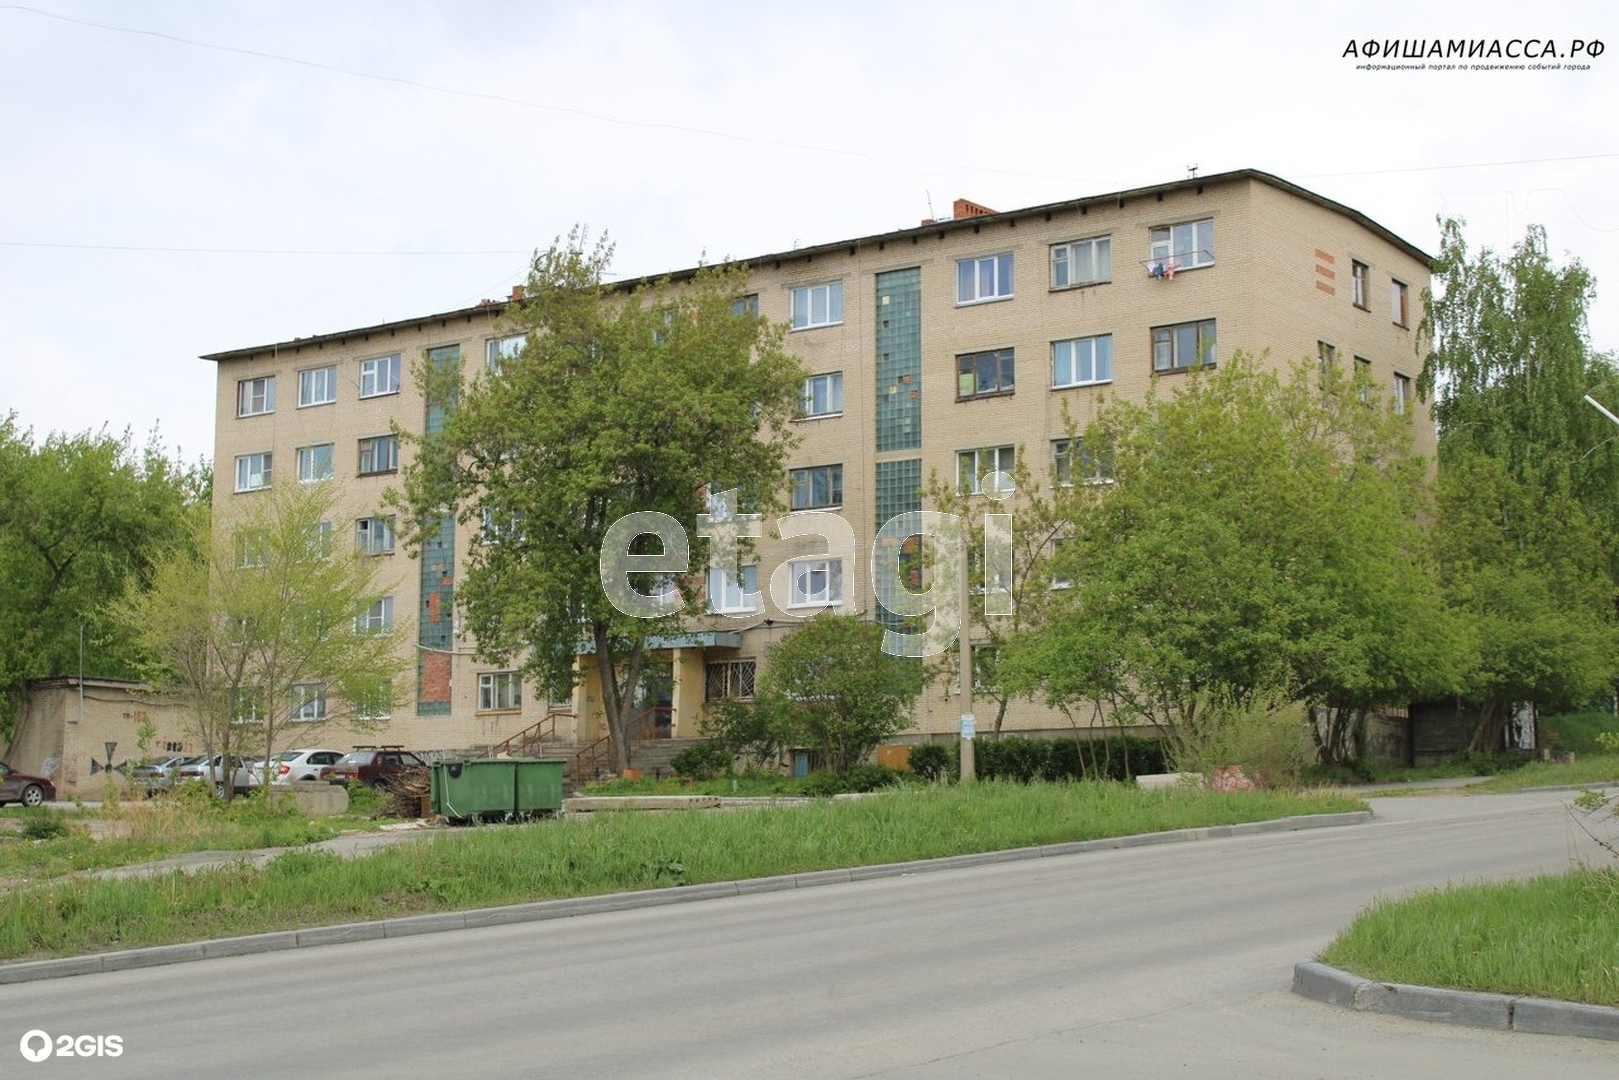 Продажа комнаты, 17м <sup>2</sup>, Миасс, Челябинская область,  Миасс